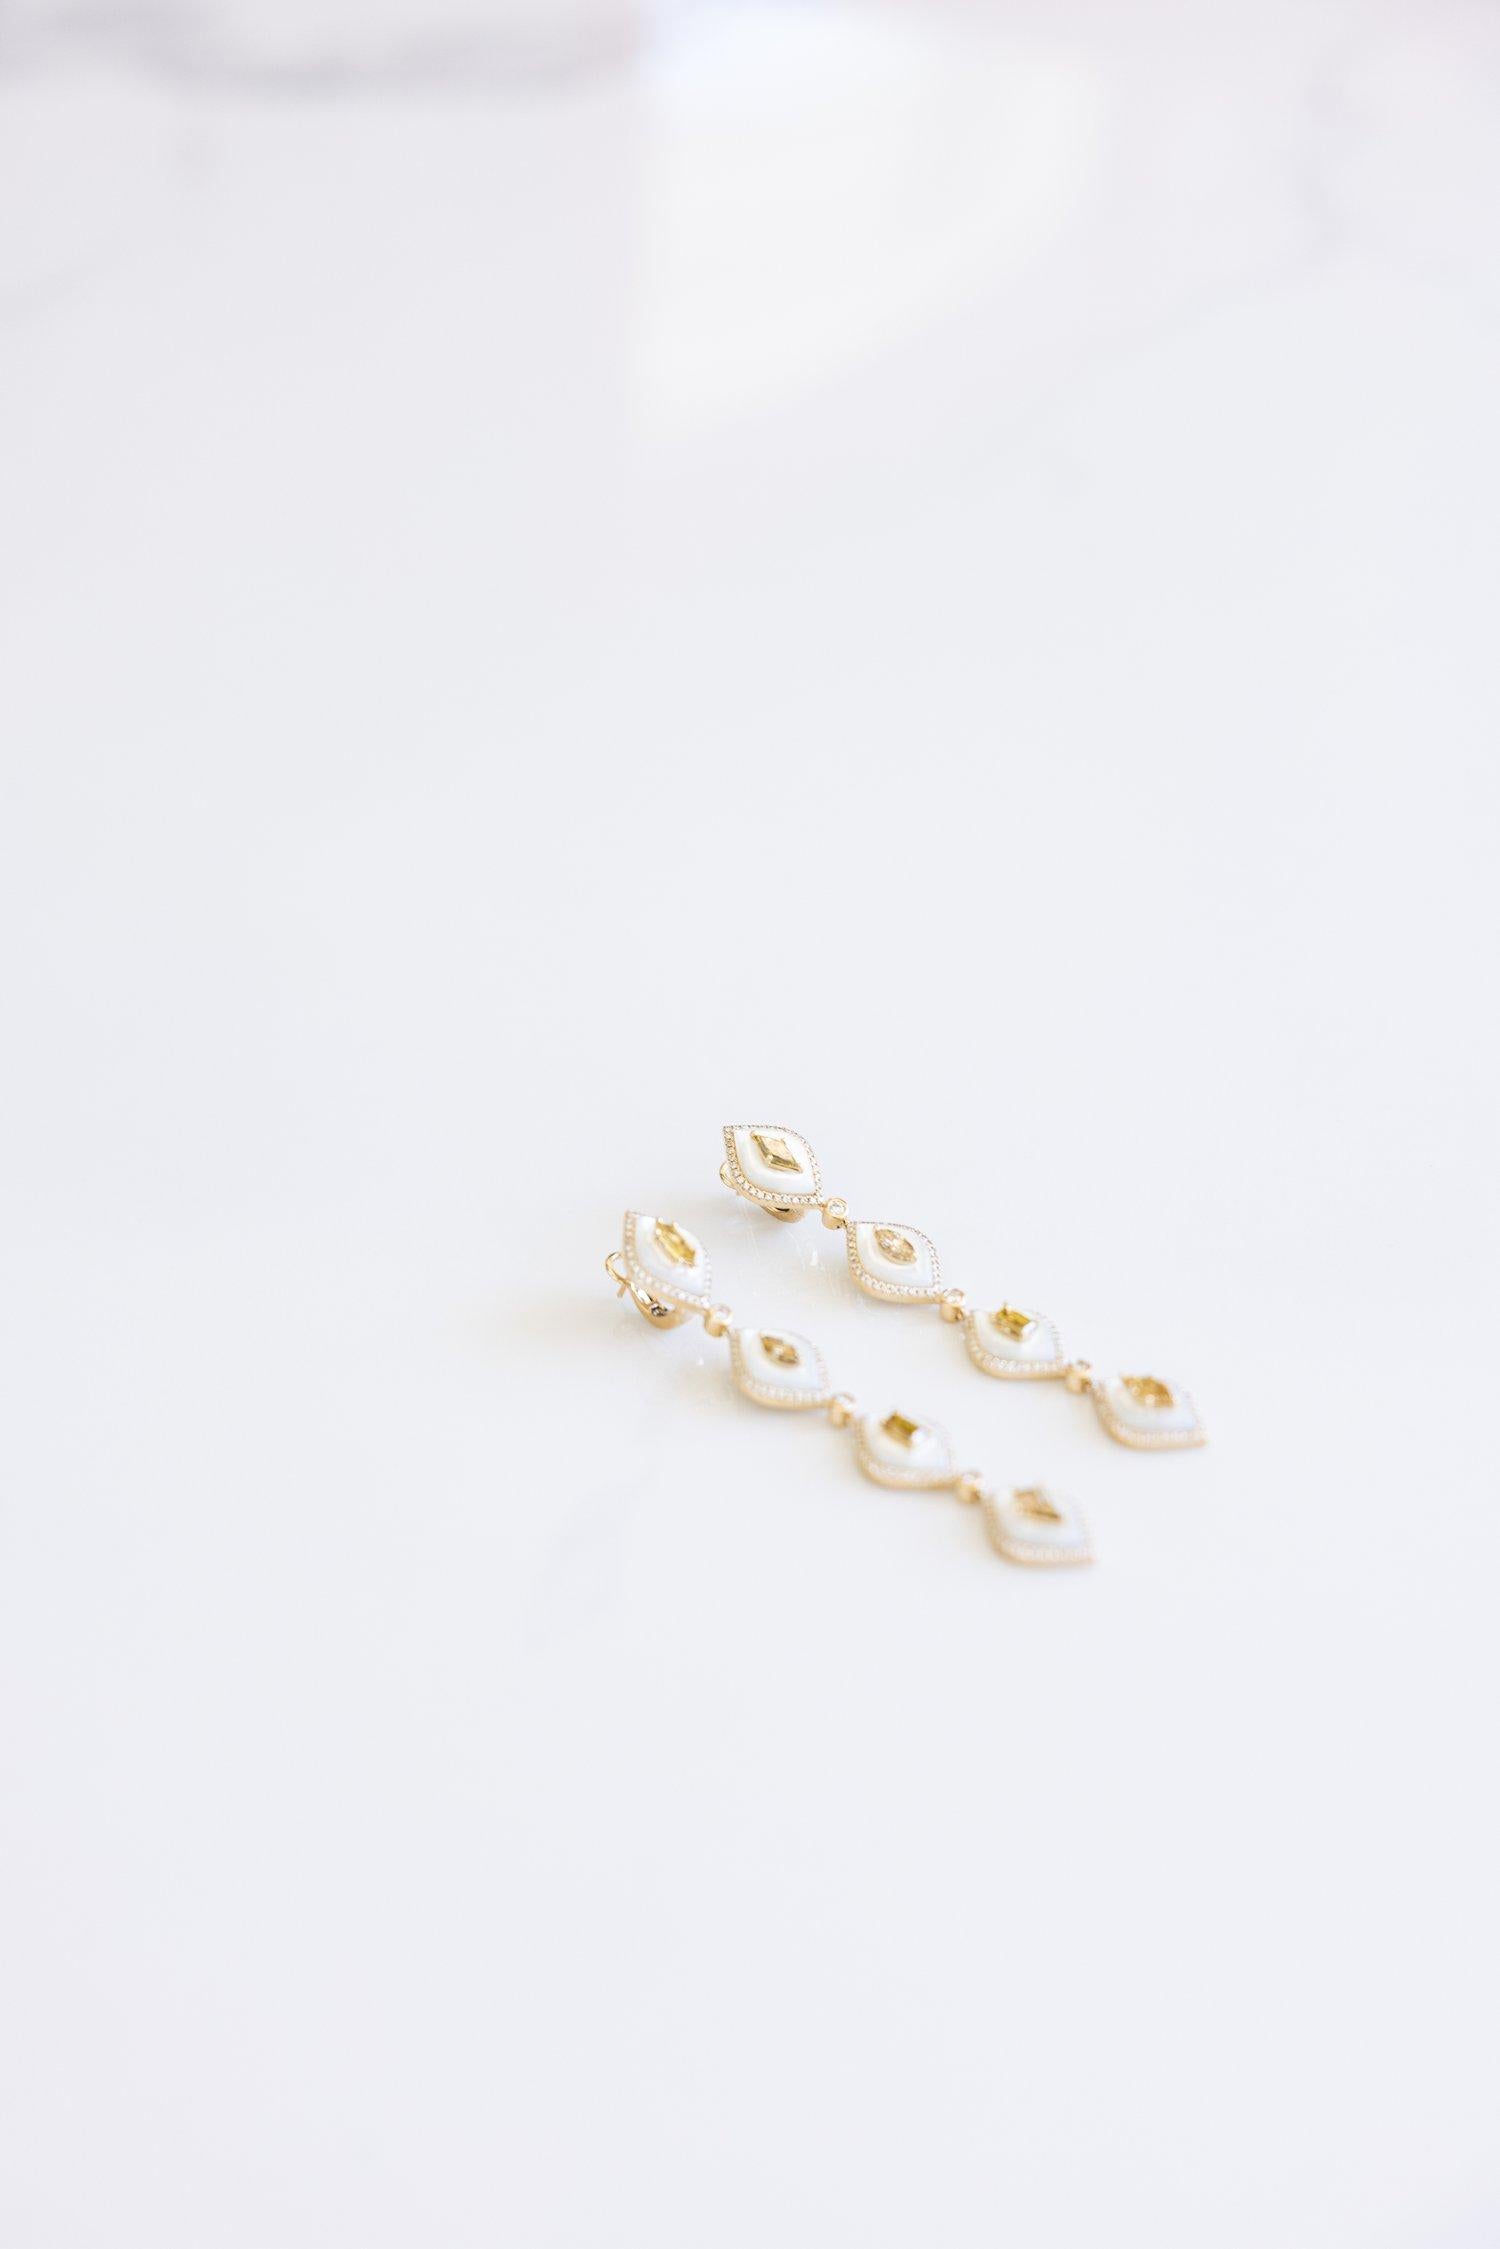 Women's or Men's Fancy Shaped Diamonds and Brilliant Cut White Diamond Linear Earrings For Sale